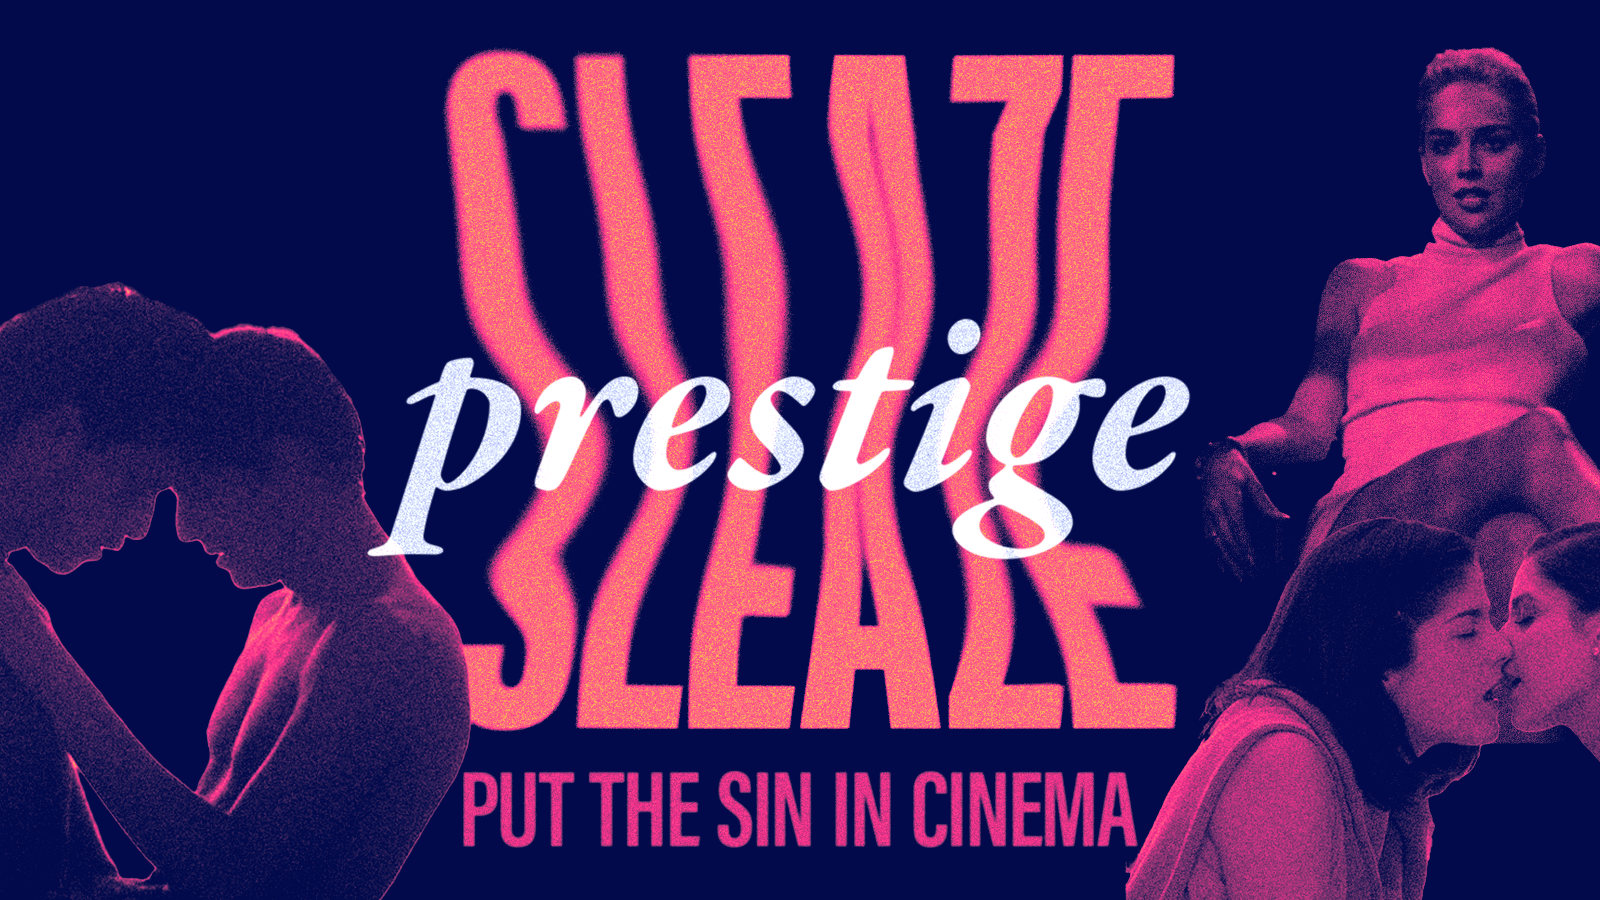 Prestige Sleaze